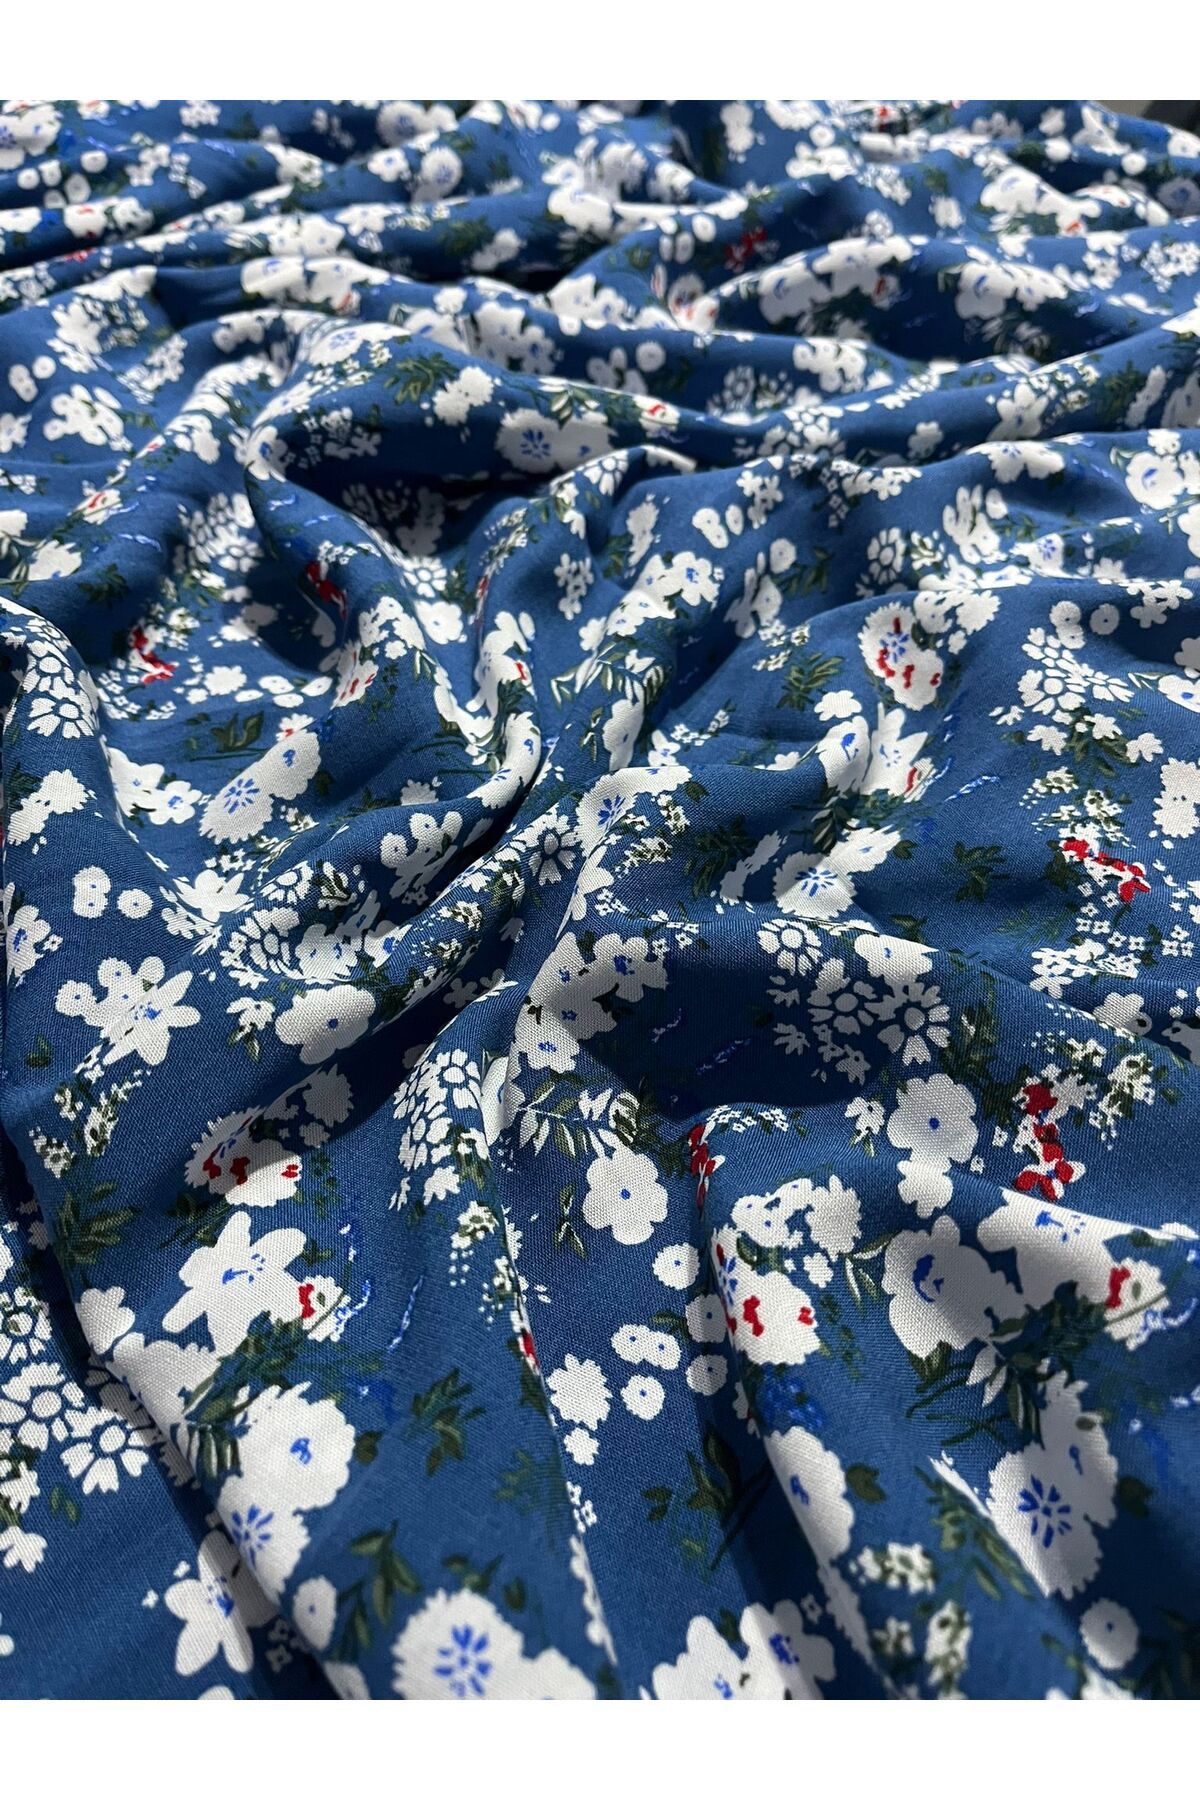 Aslan Online Çift En 150 Cm Elbise Etek Gömlek Ve Kimono Dikimine Uygun Desenli Pamuklu Viskon Kumaş Mavi